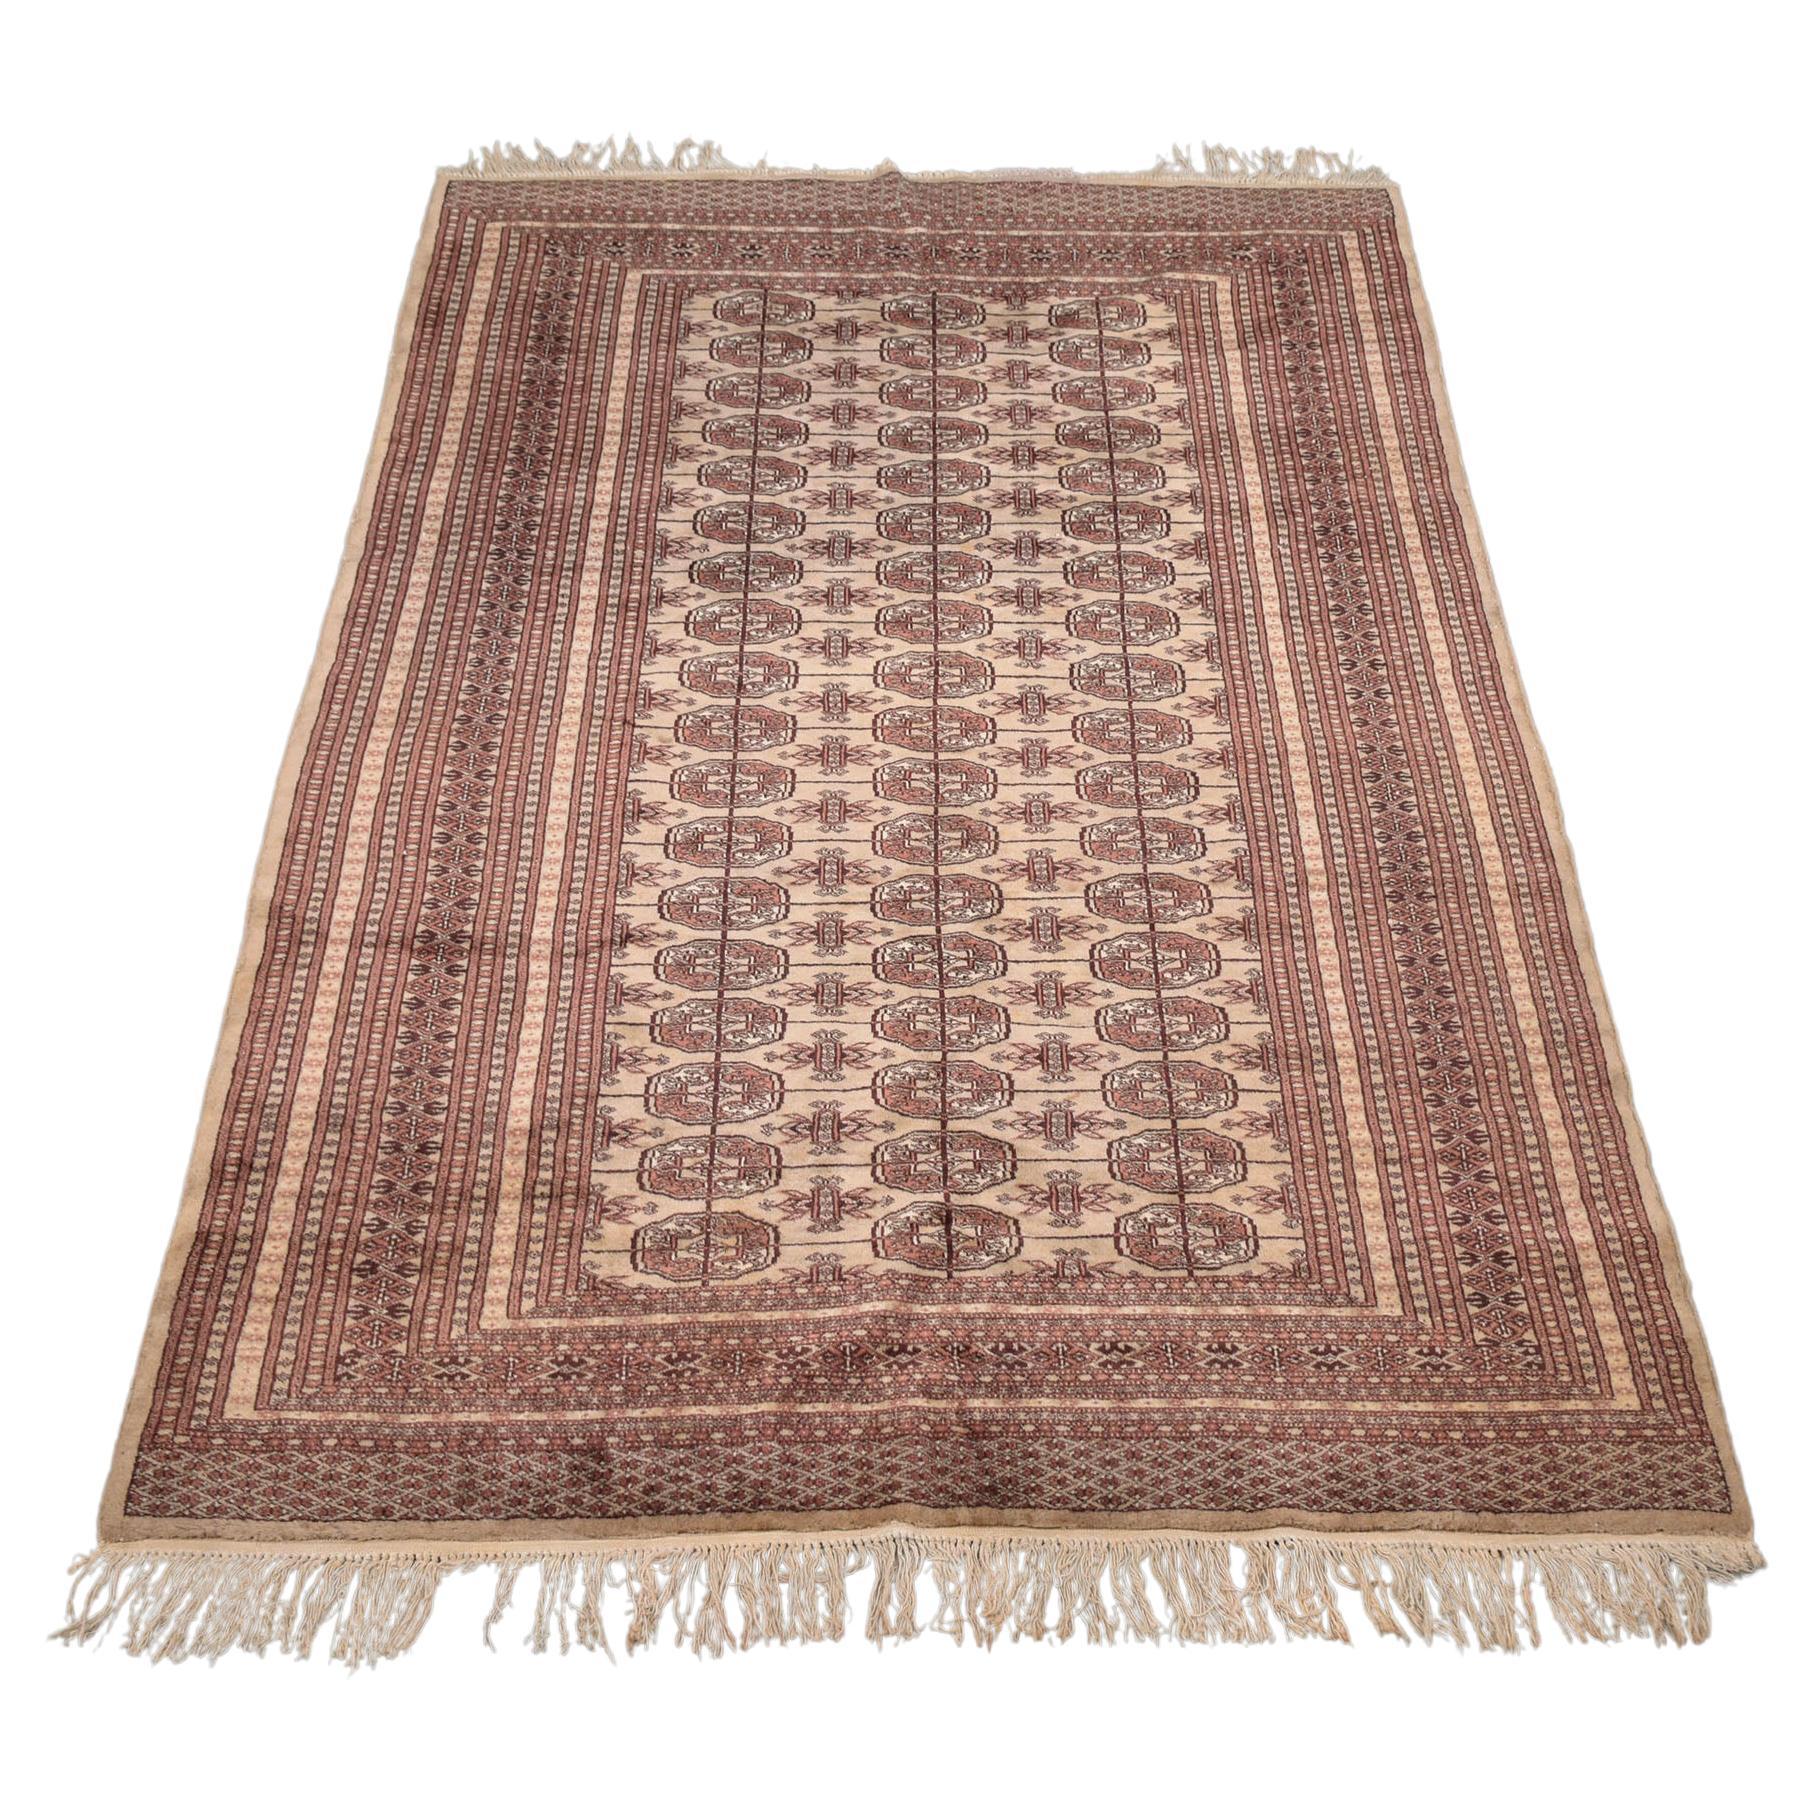 What is a Kazak rug?